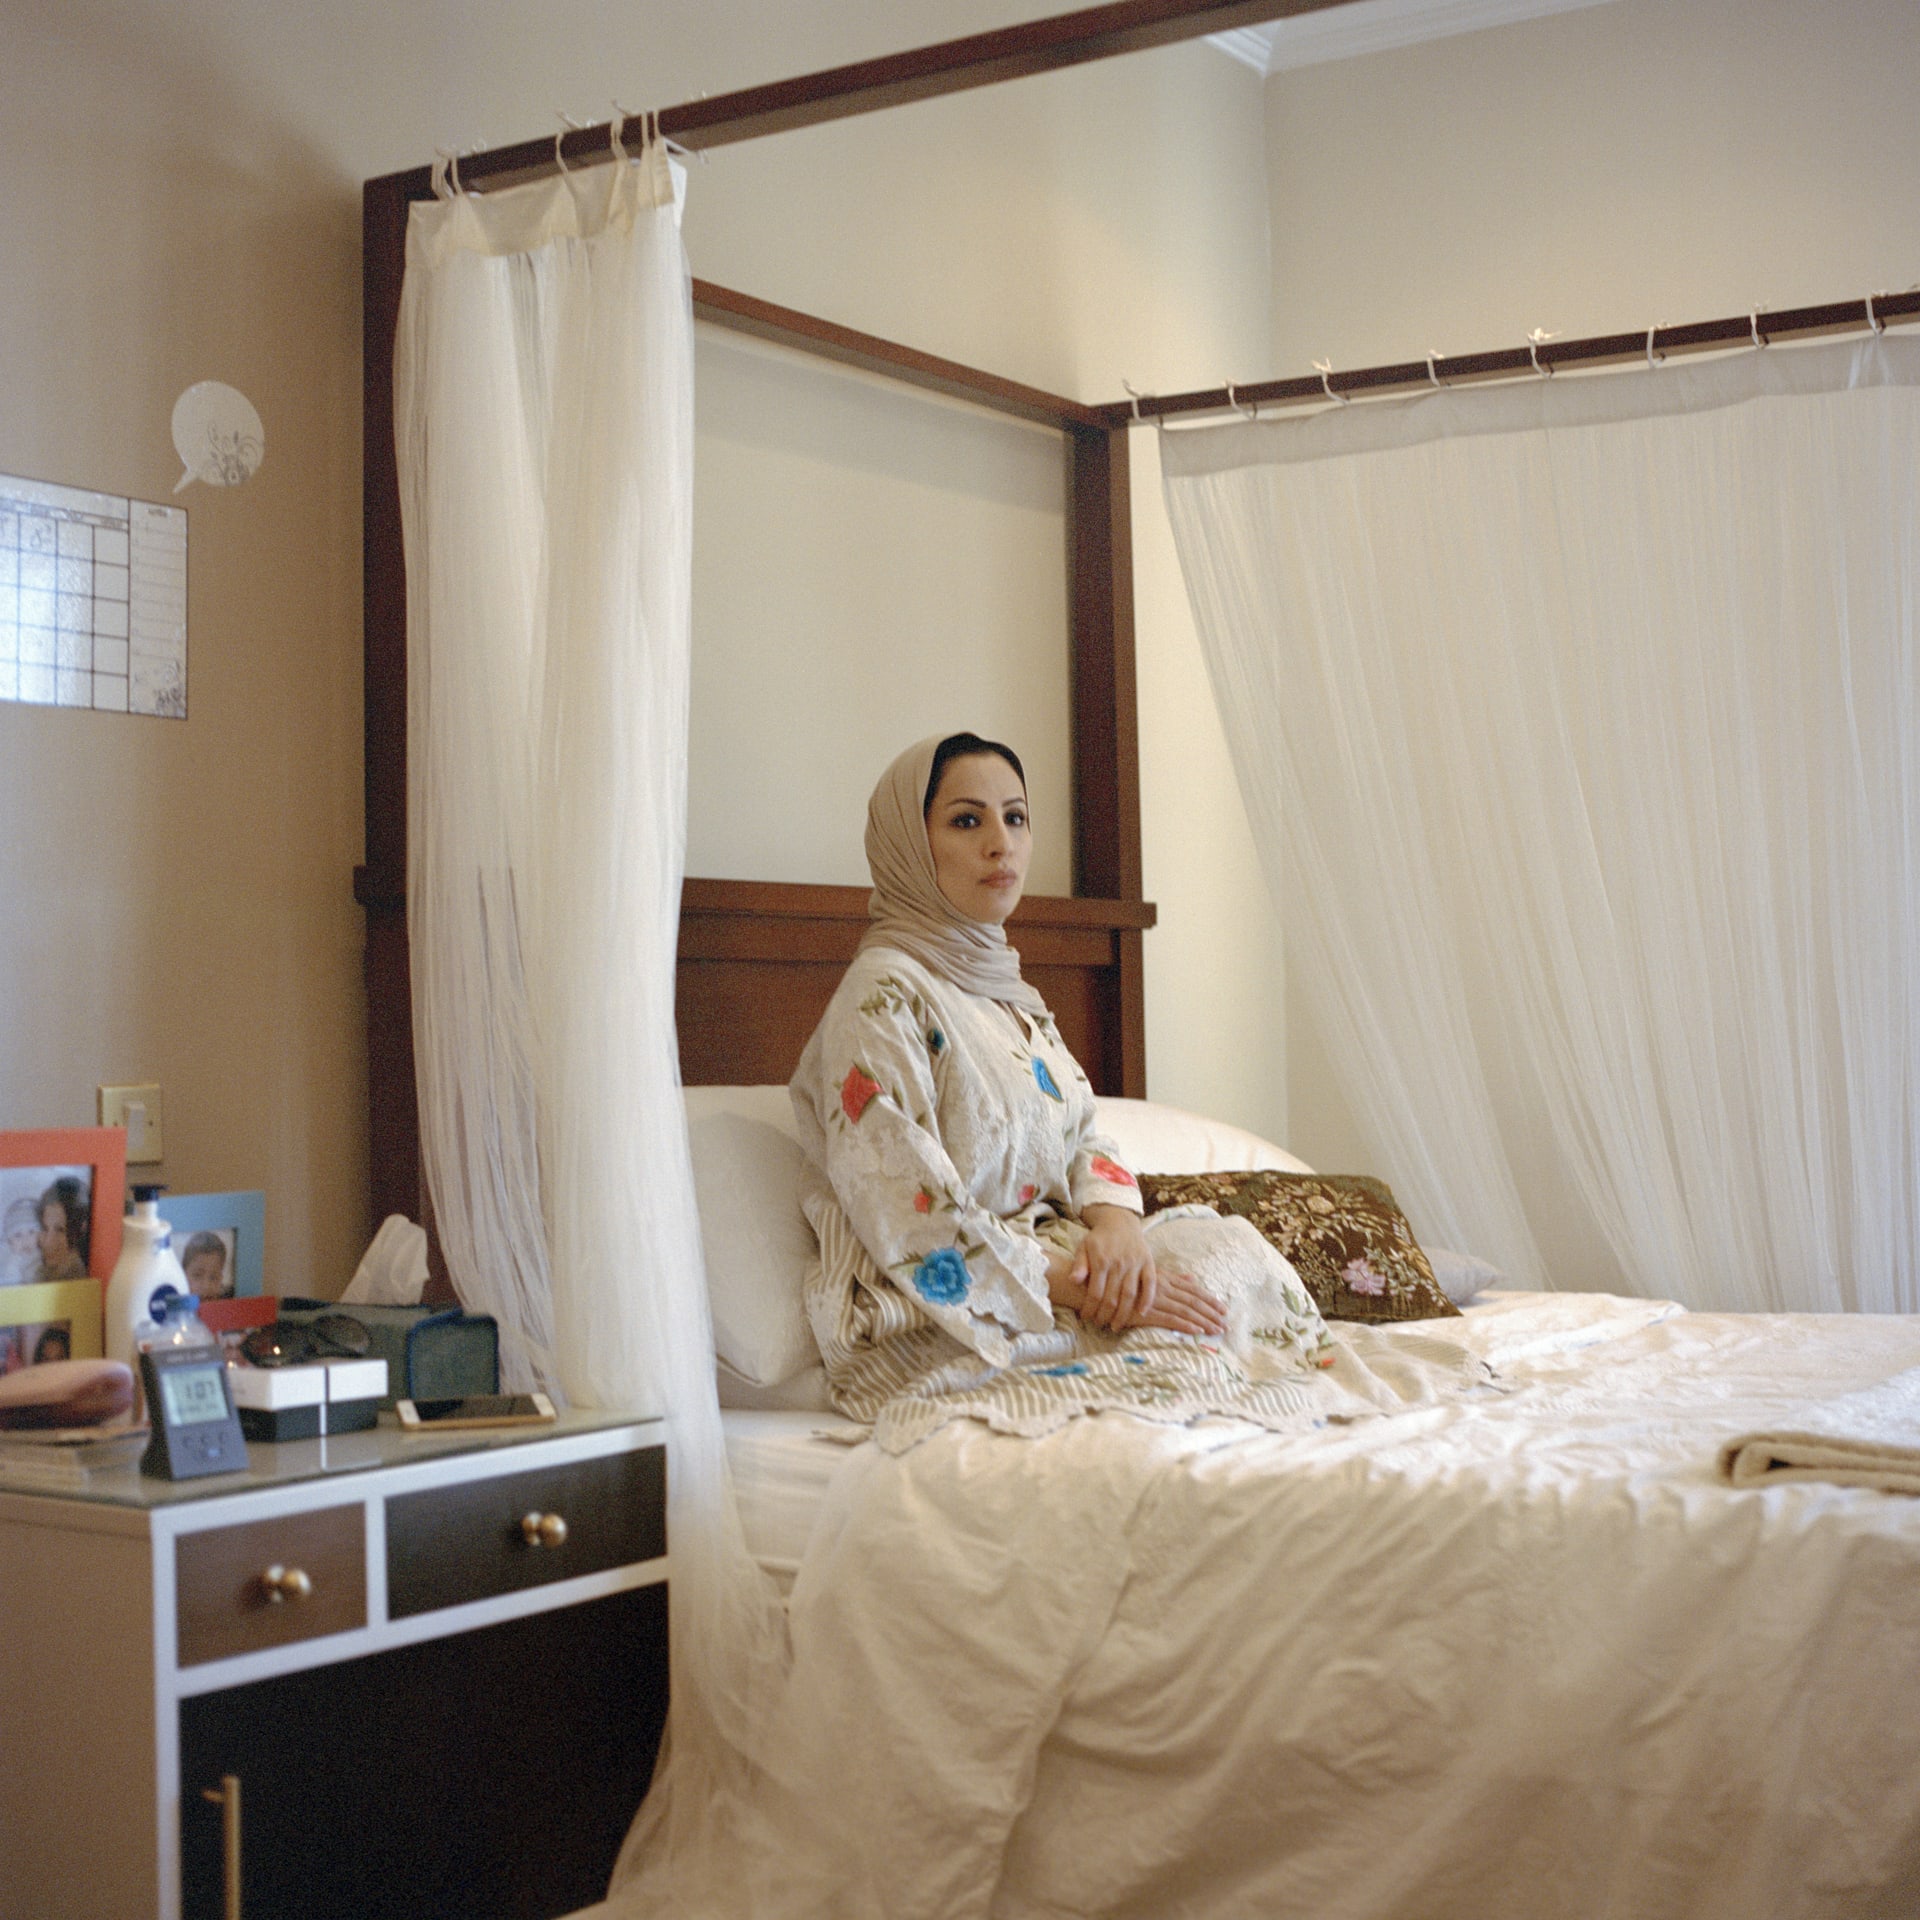 من داخل غرفهن.. كيف تعيد هذه الصور تعريف المرأة الكويتية المعاصرة؟